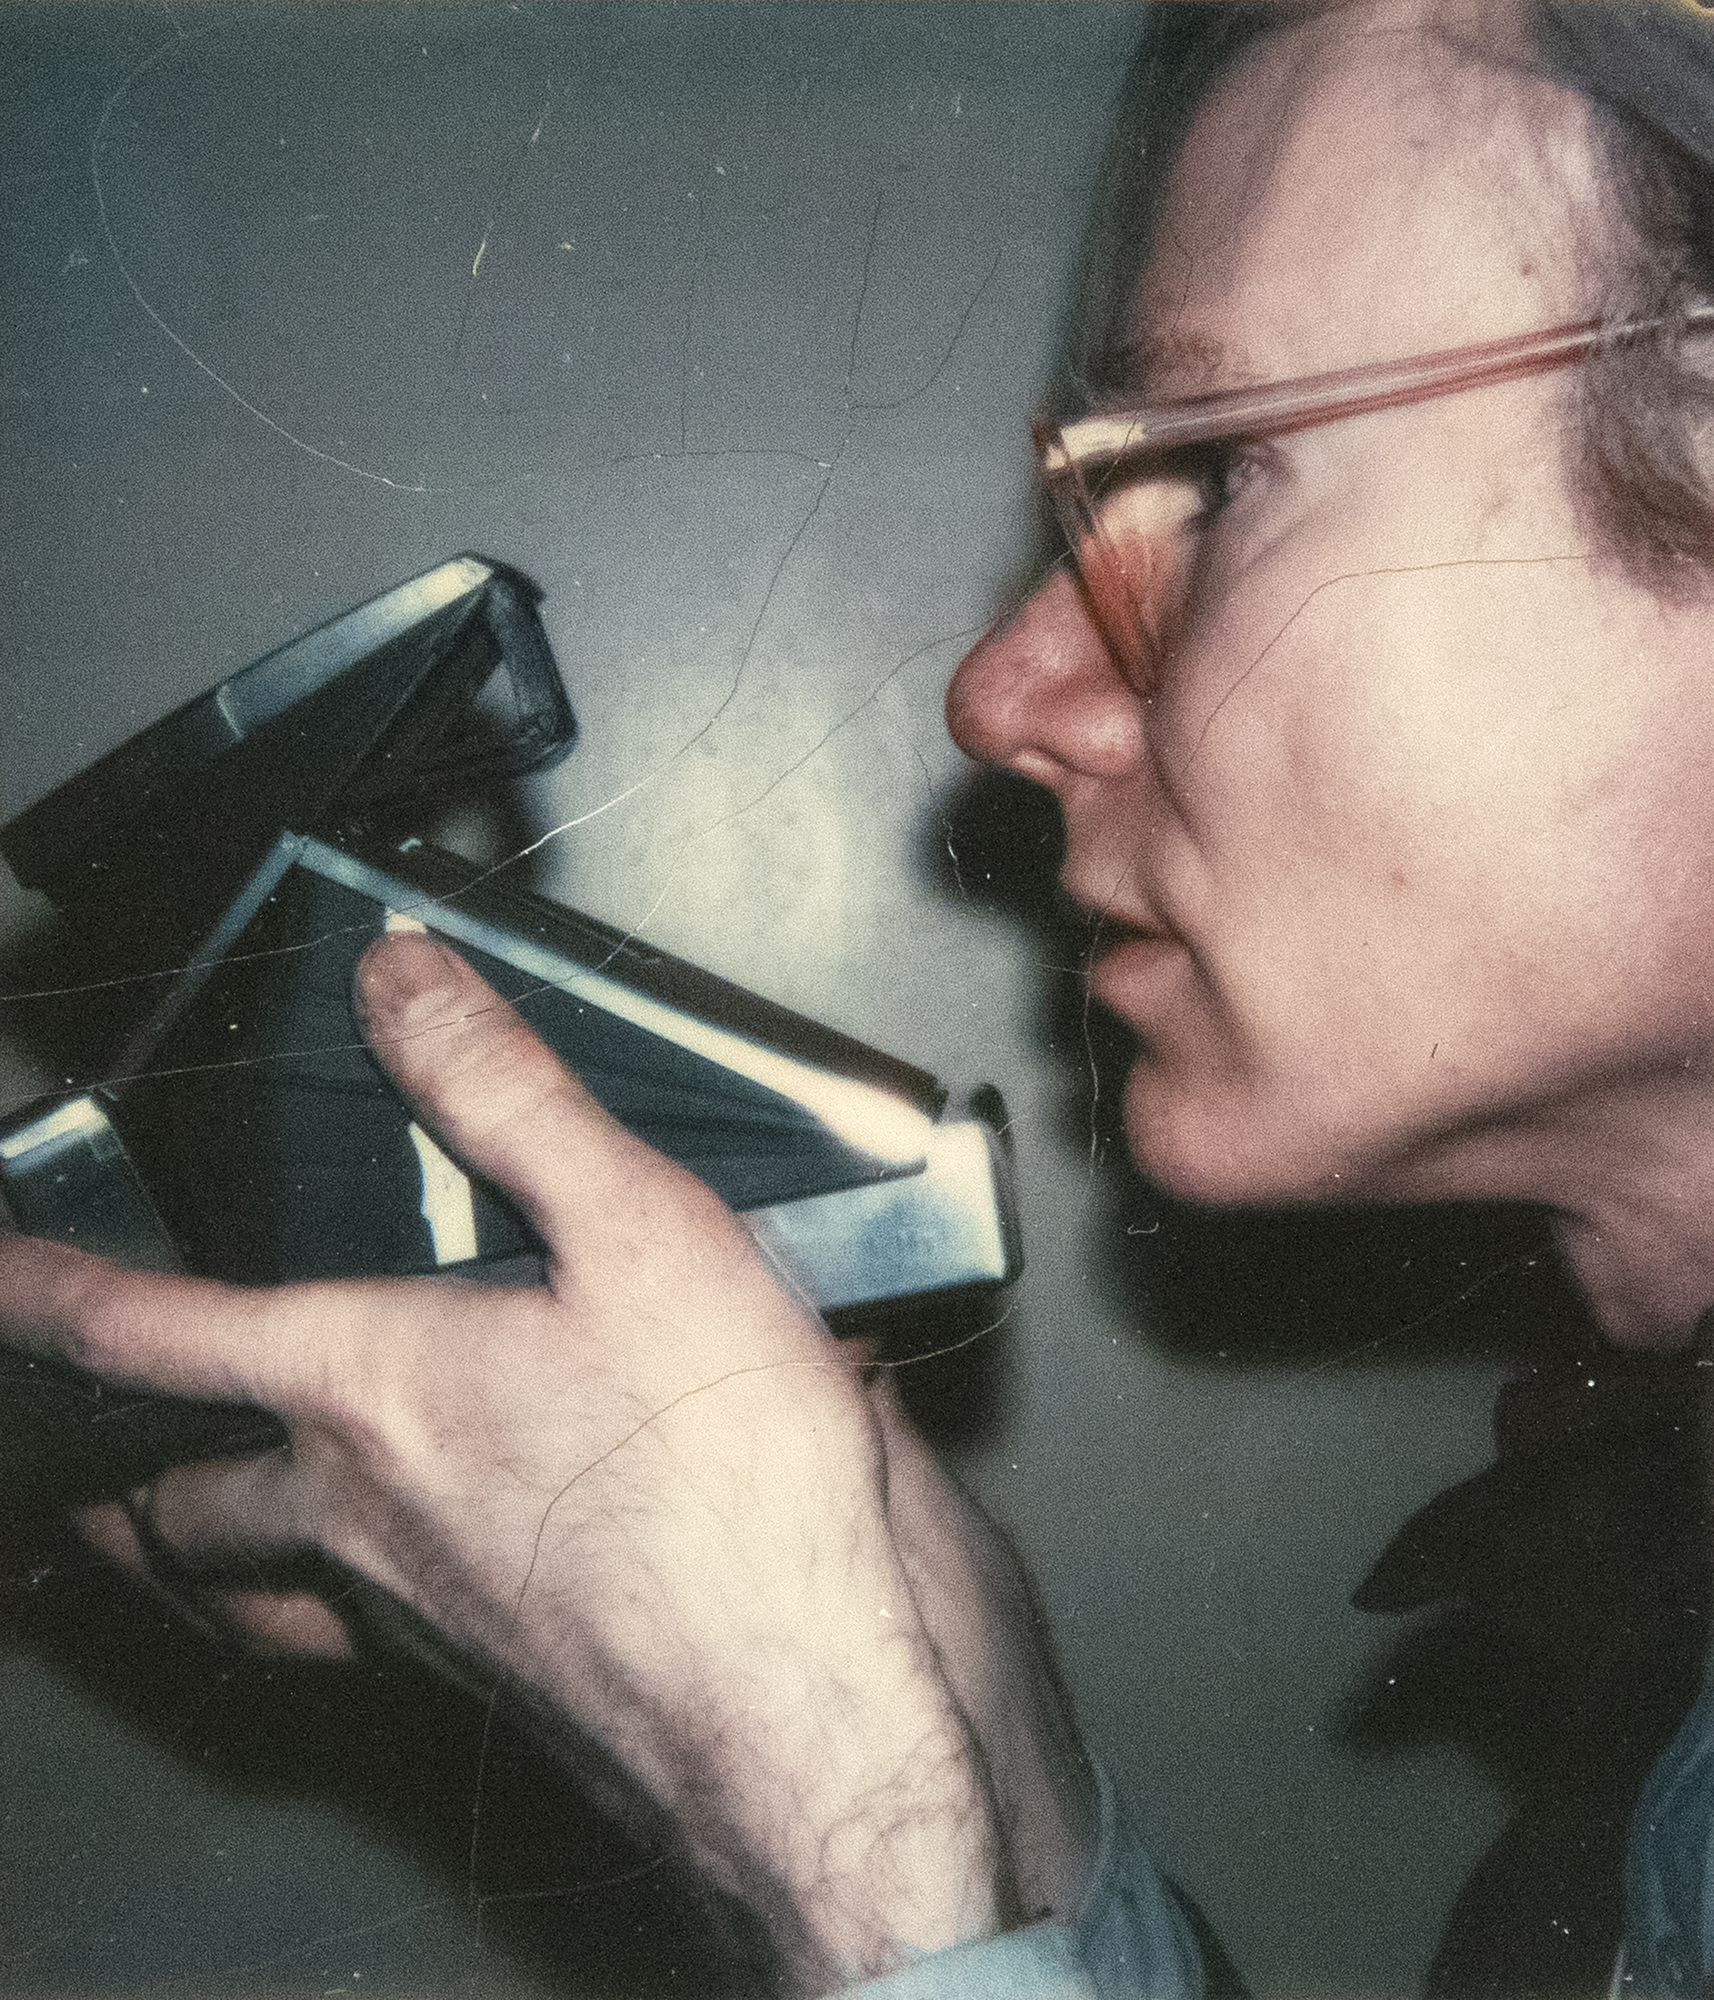 Andy Warhol llevó una cámara Polaroid como cronista implacable de la vida y sus encuentros desde finales de la década de 1950 hasta su muerte en 1987. La vasta colección de Polaroids que amasó son espontáneas, sin pulir, a menudo crudas, y sirven como crónica de su tiempo, de forma similar a como Instagram refleja nuestra era actual. Otra persona podría haber tomado este autorretrato, creando una proposición apenas velada que pide al espectador que lo acepte como tal, o tal vez fue logrado únicamente por Warhol utilizando un accesorio externo de autodisparador. Es un retrato que celebra el dispositivo sobre el que giró esencialmente la vida de Warhol, un homenaje cuidadosamente escenificado a su relación con la cámara Polaroid.